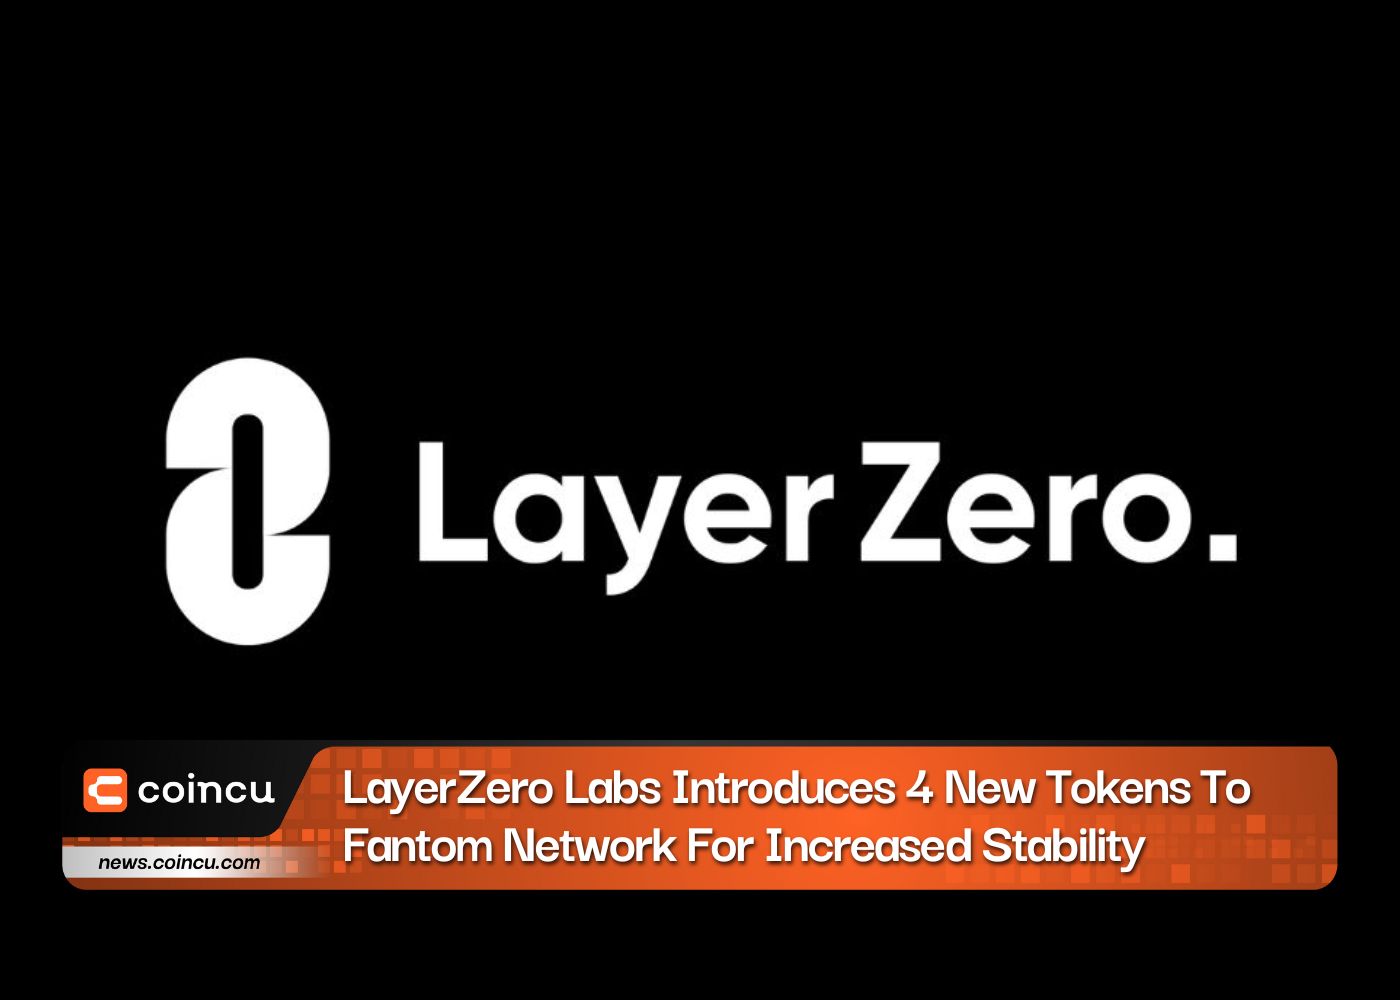 LayerZero Labs, Artırılmış Kararlılık İçin Fantom Ağına 4 Yeni Jeton Sunuyor